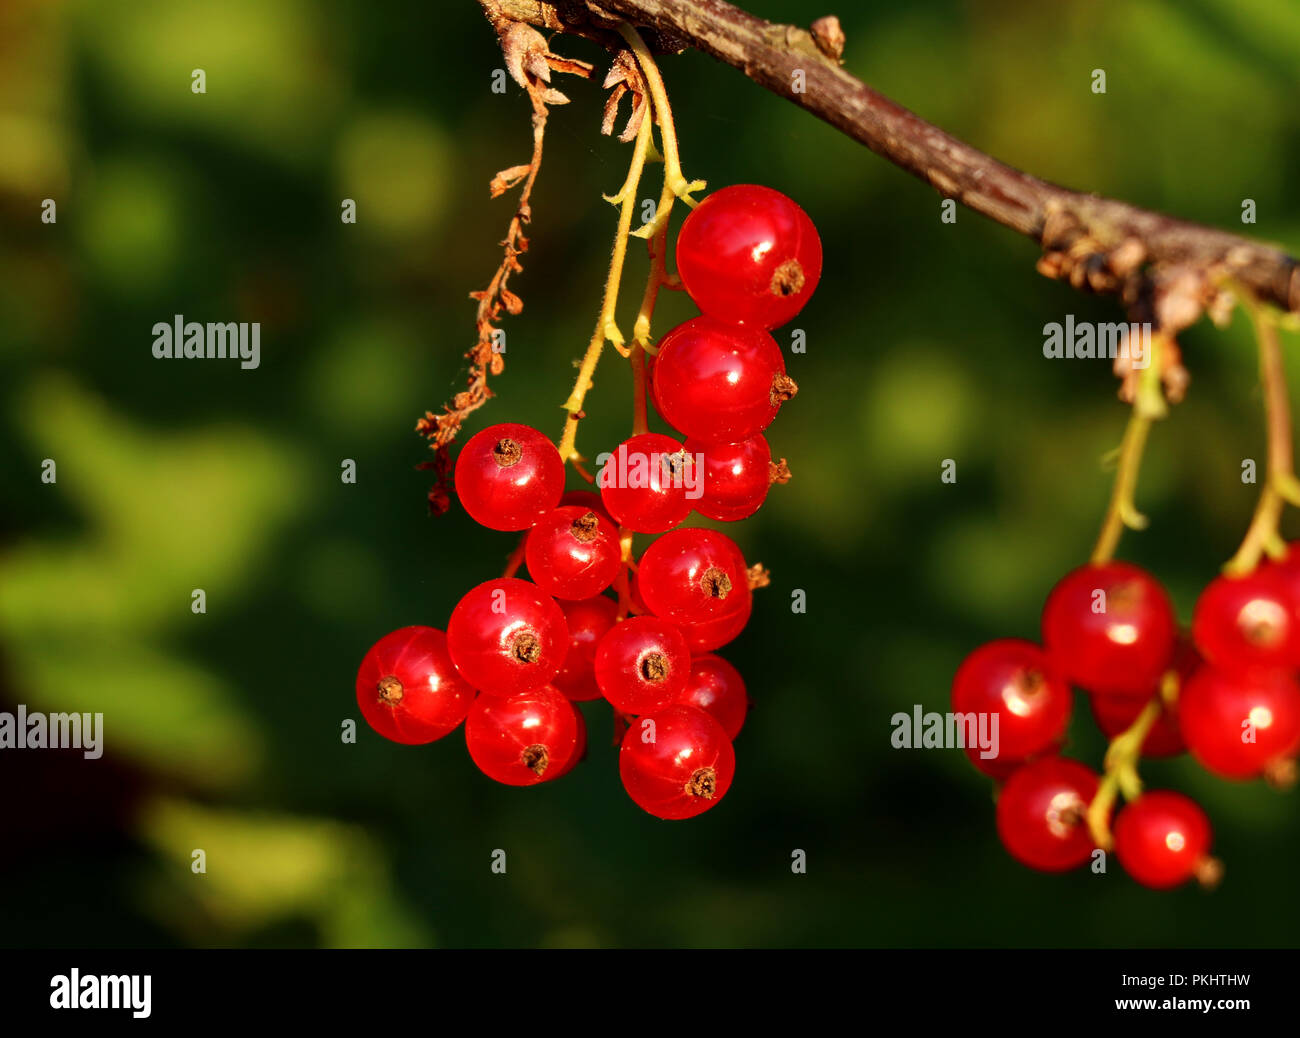 Stockfotografie Sammeln vielen Alamy Beeren von Johannisbeeren. mit - diese für der kleinen Beeren. Ein Idealer Zeitpunkt roten Hängen an Stamm